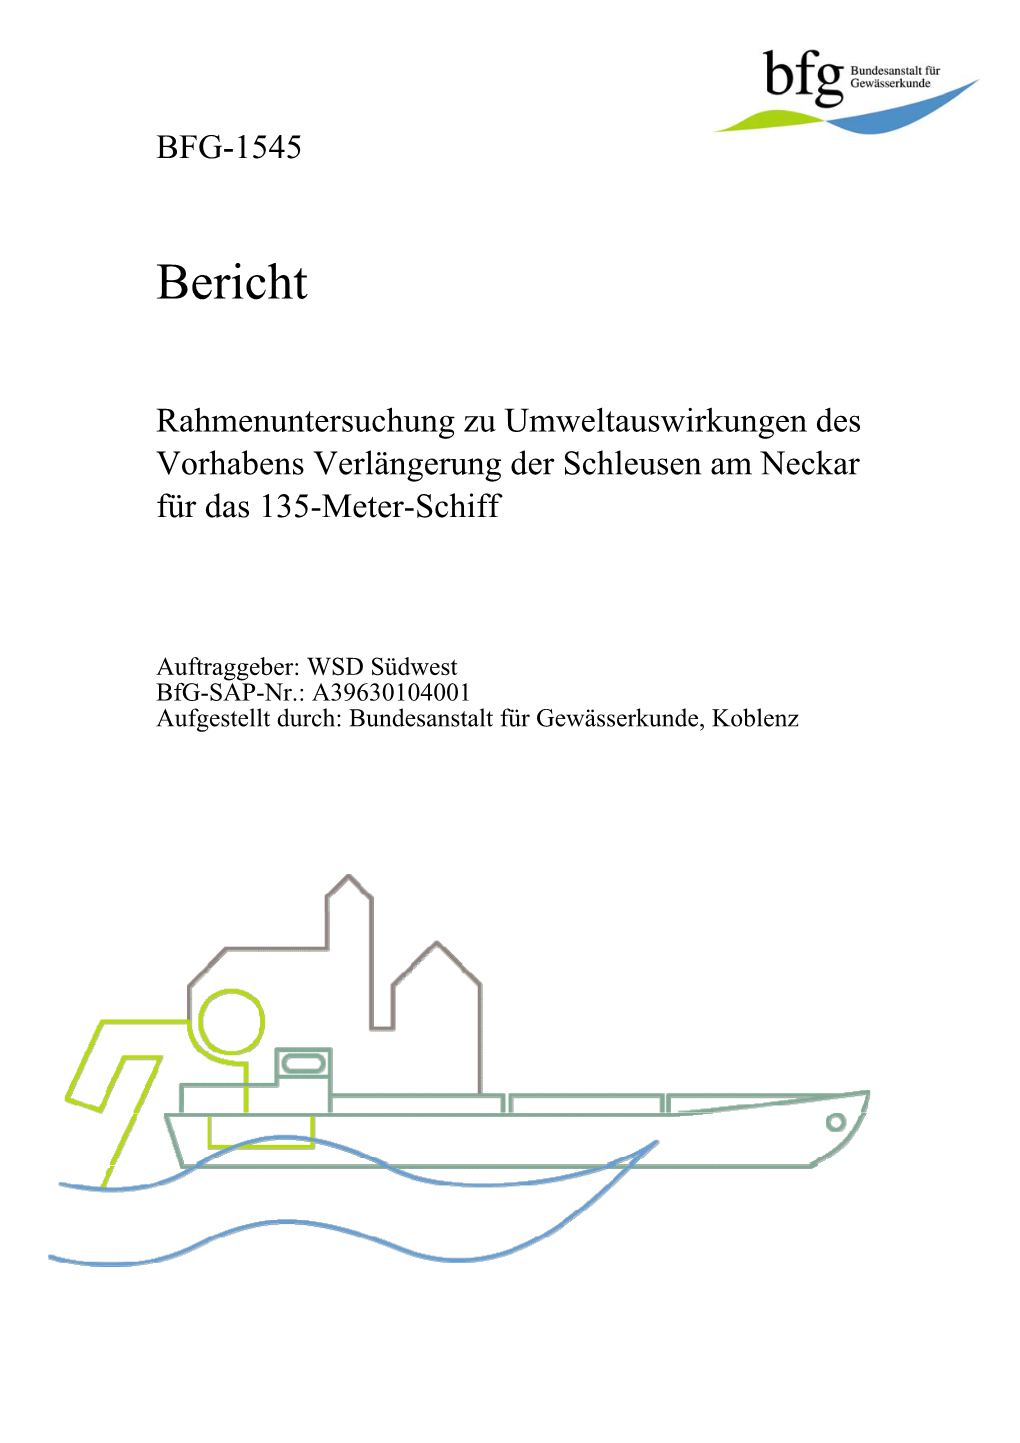 Bfg-Bericht-1545, Rahmenuntersuchung Zu Umweltauswirkungen Des Vorhabens Verlängerung Der Schleusen Am Neckar Für Das 135-Mete